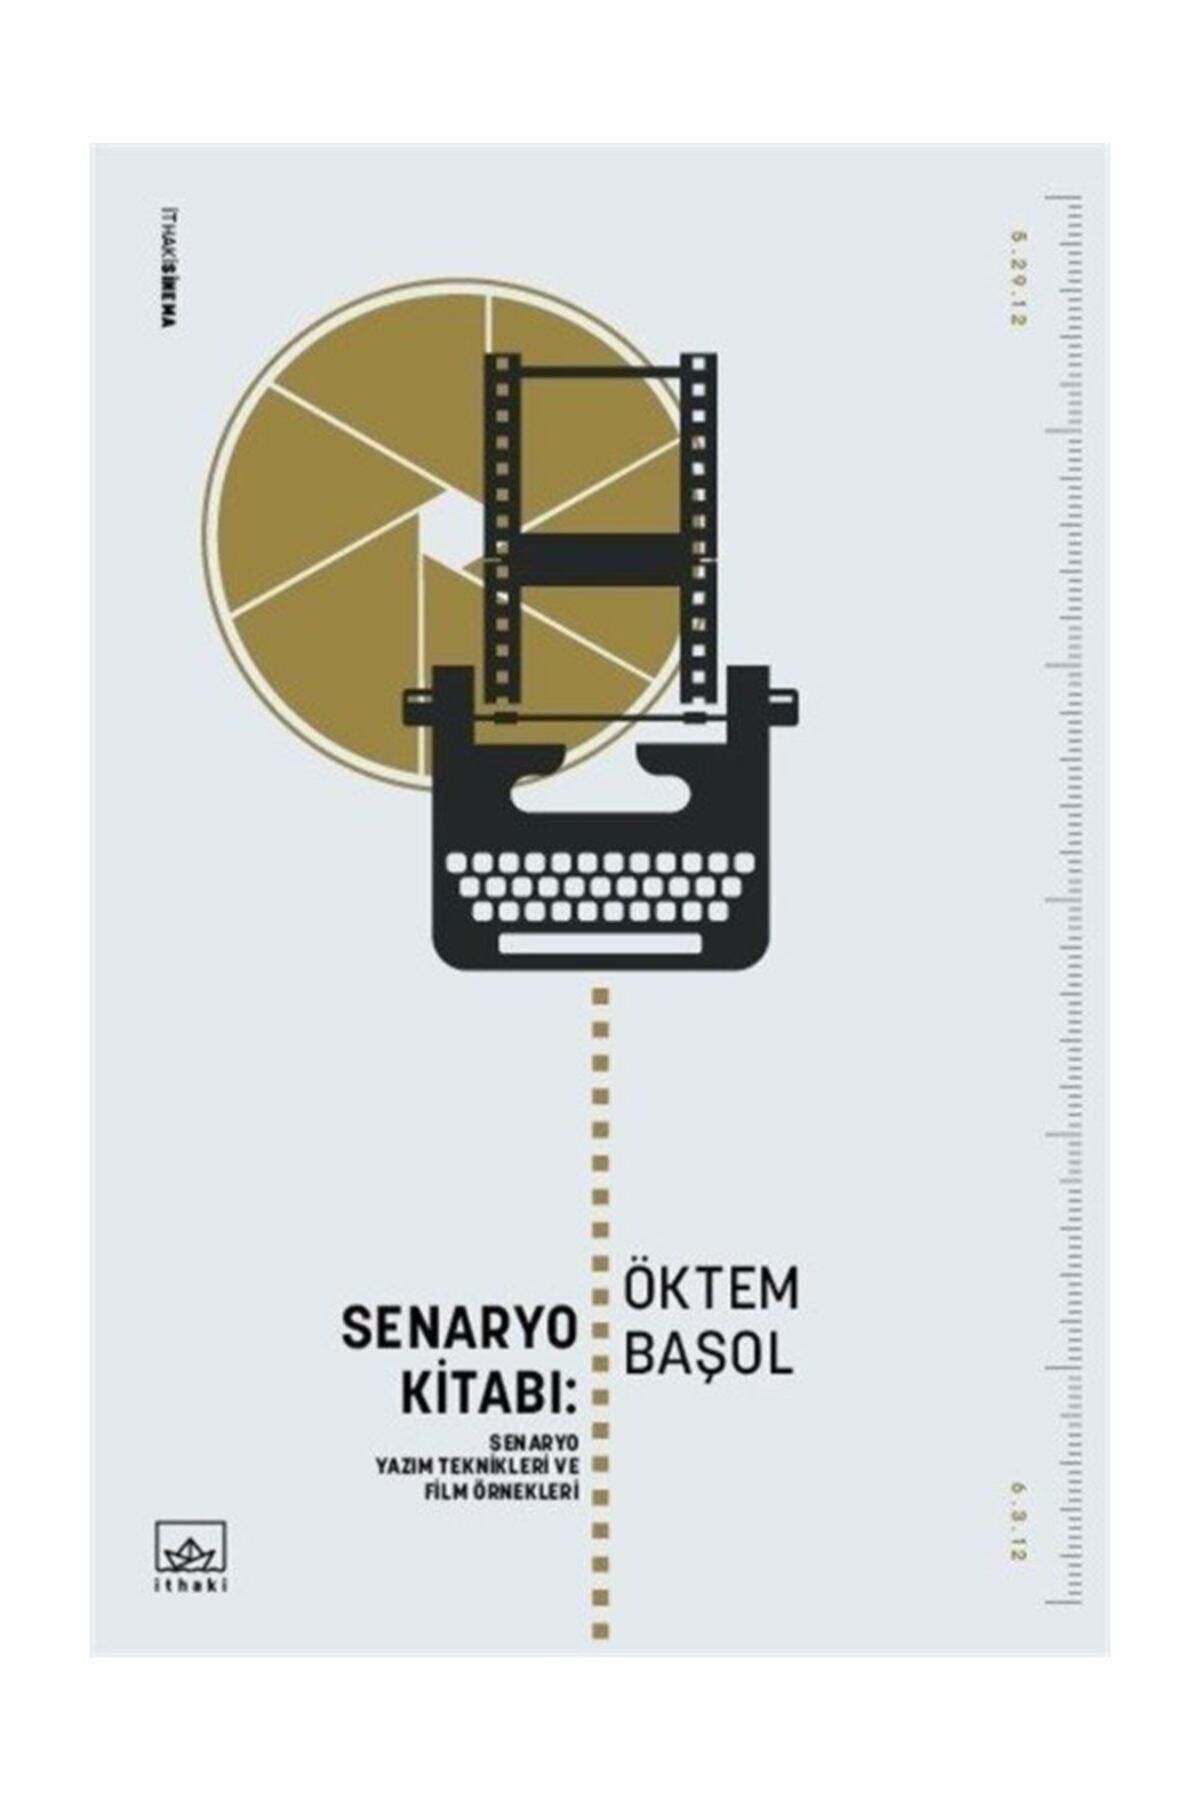 İthaki Yayınları Senaryo Kitabı: Senaryo Yazım Teknikleri ve Film Öyküleri